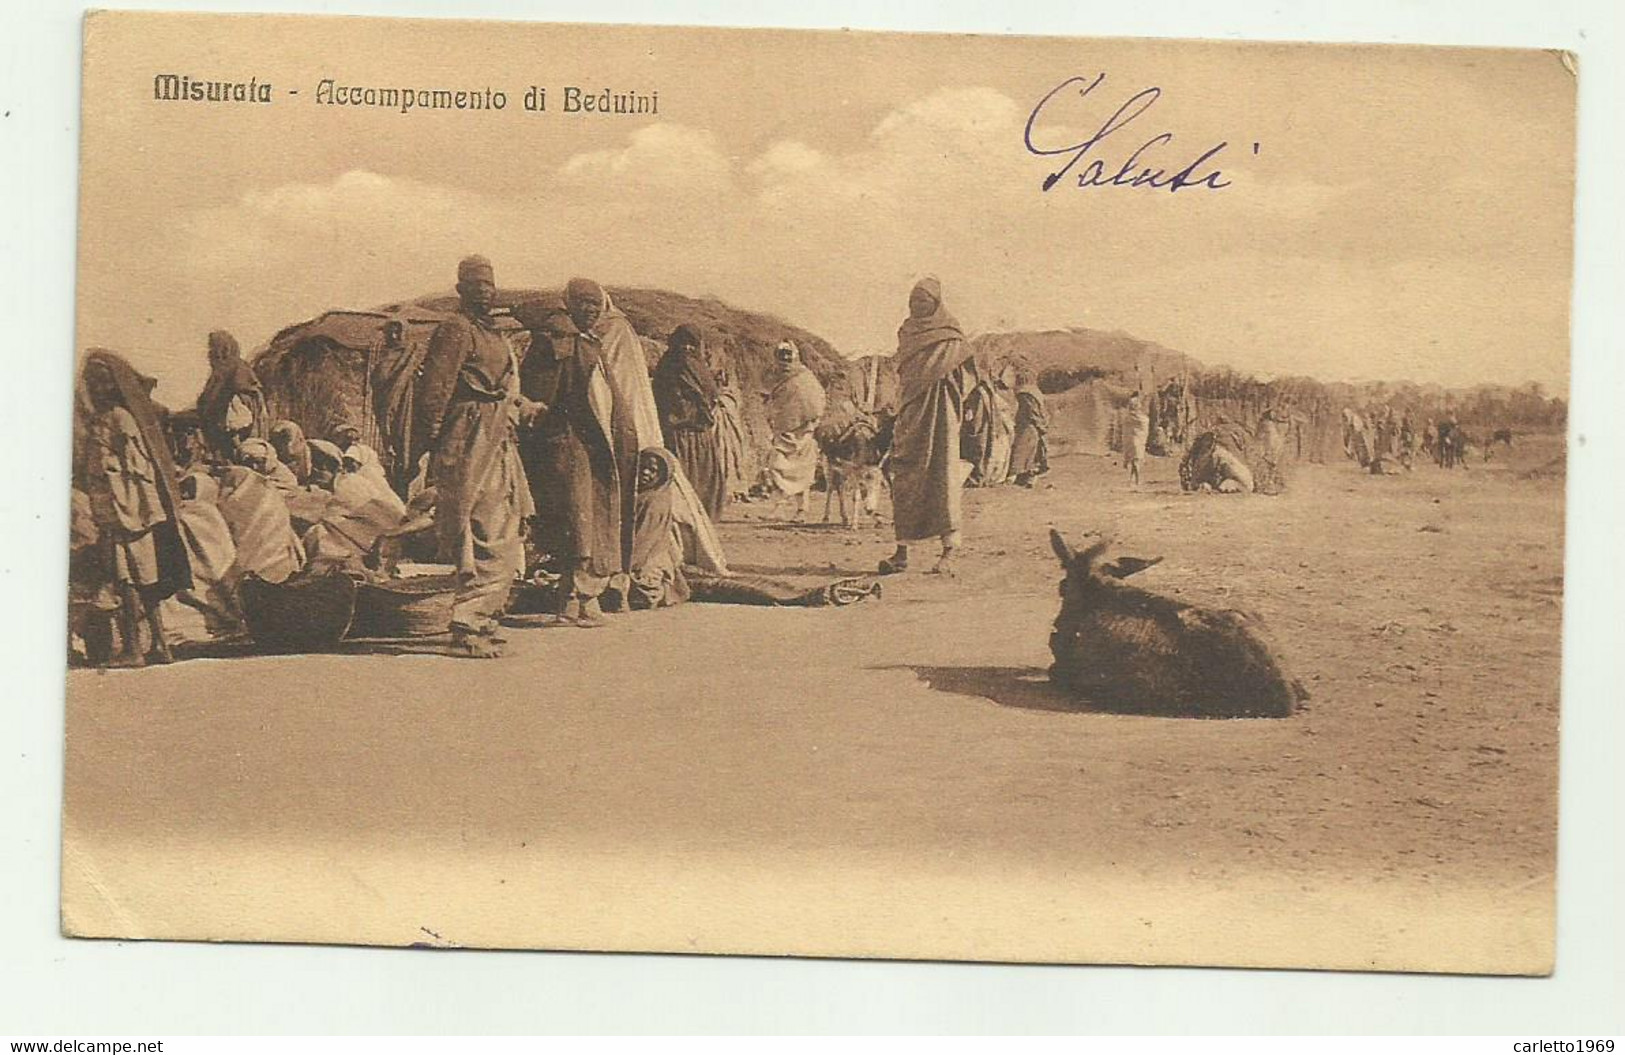 MISURATA - ACCAMPAMENTO DI BEDUINI - TIMBRO R.POSTE COMANDO 52o BATT.NE BERSAGLIERI 1915  - VIAGGIATA FP - Libye